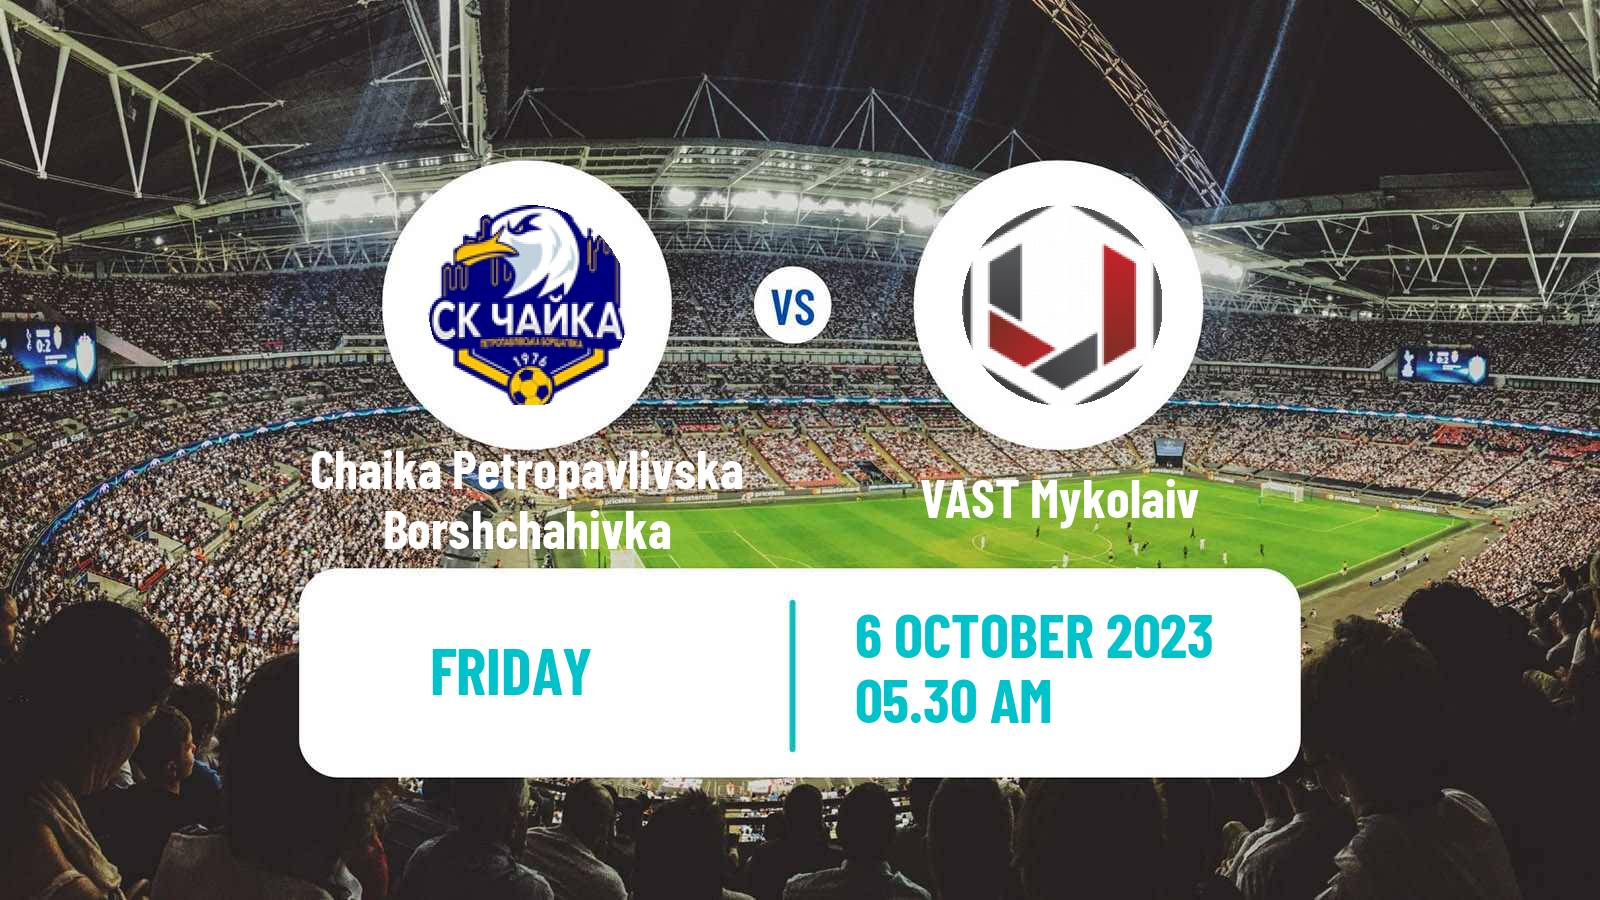 Soccer Ukrainian Druha Liga Chaika Petropavlivska Borshchahivka - VAST Mykolaiv